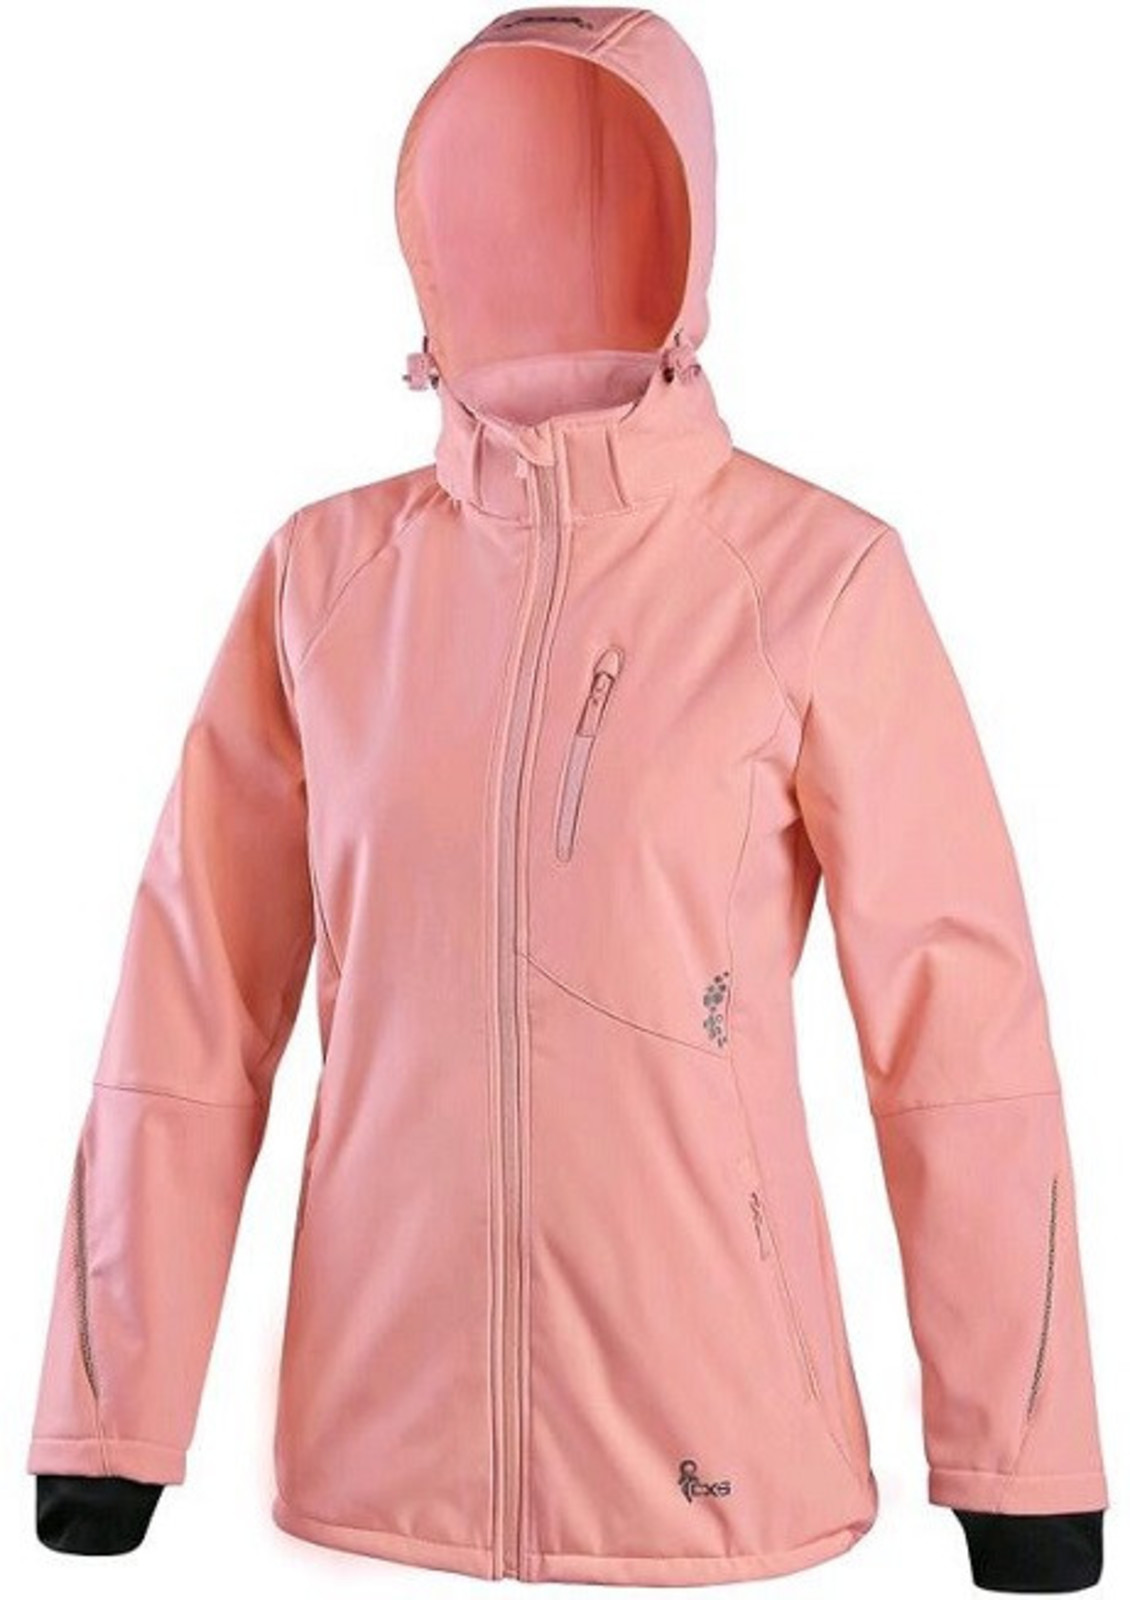 Softshellová bunda CXS Nevada dámska - veľkosť: L, farba: marhuľová